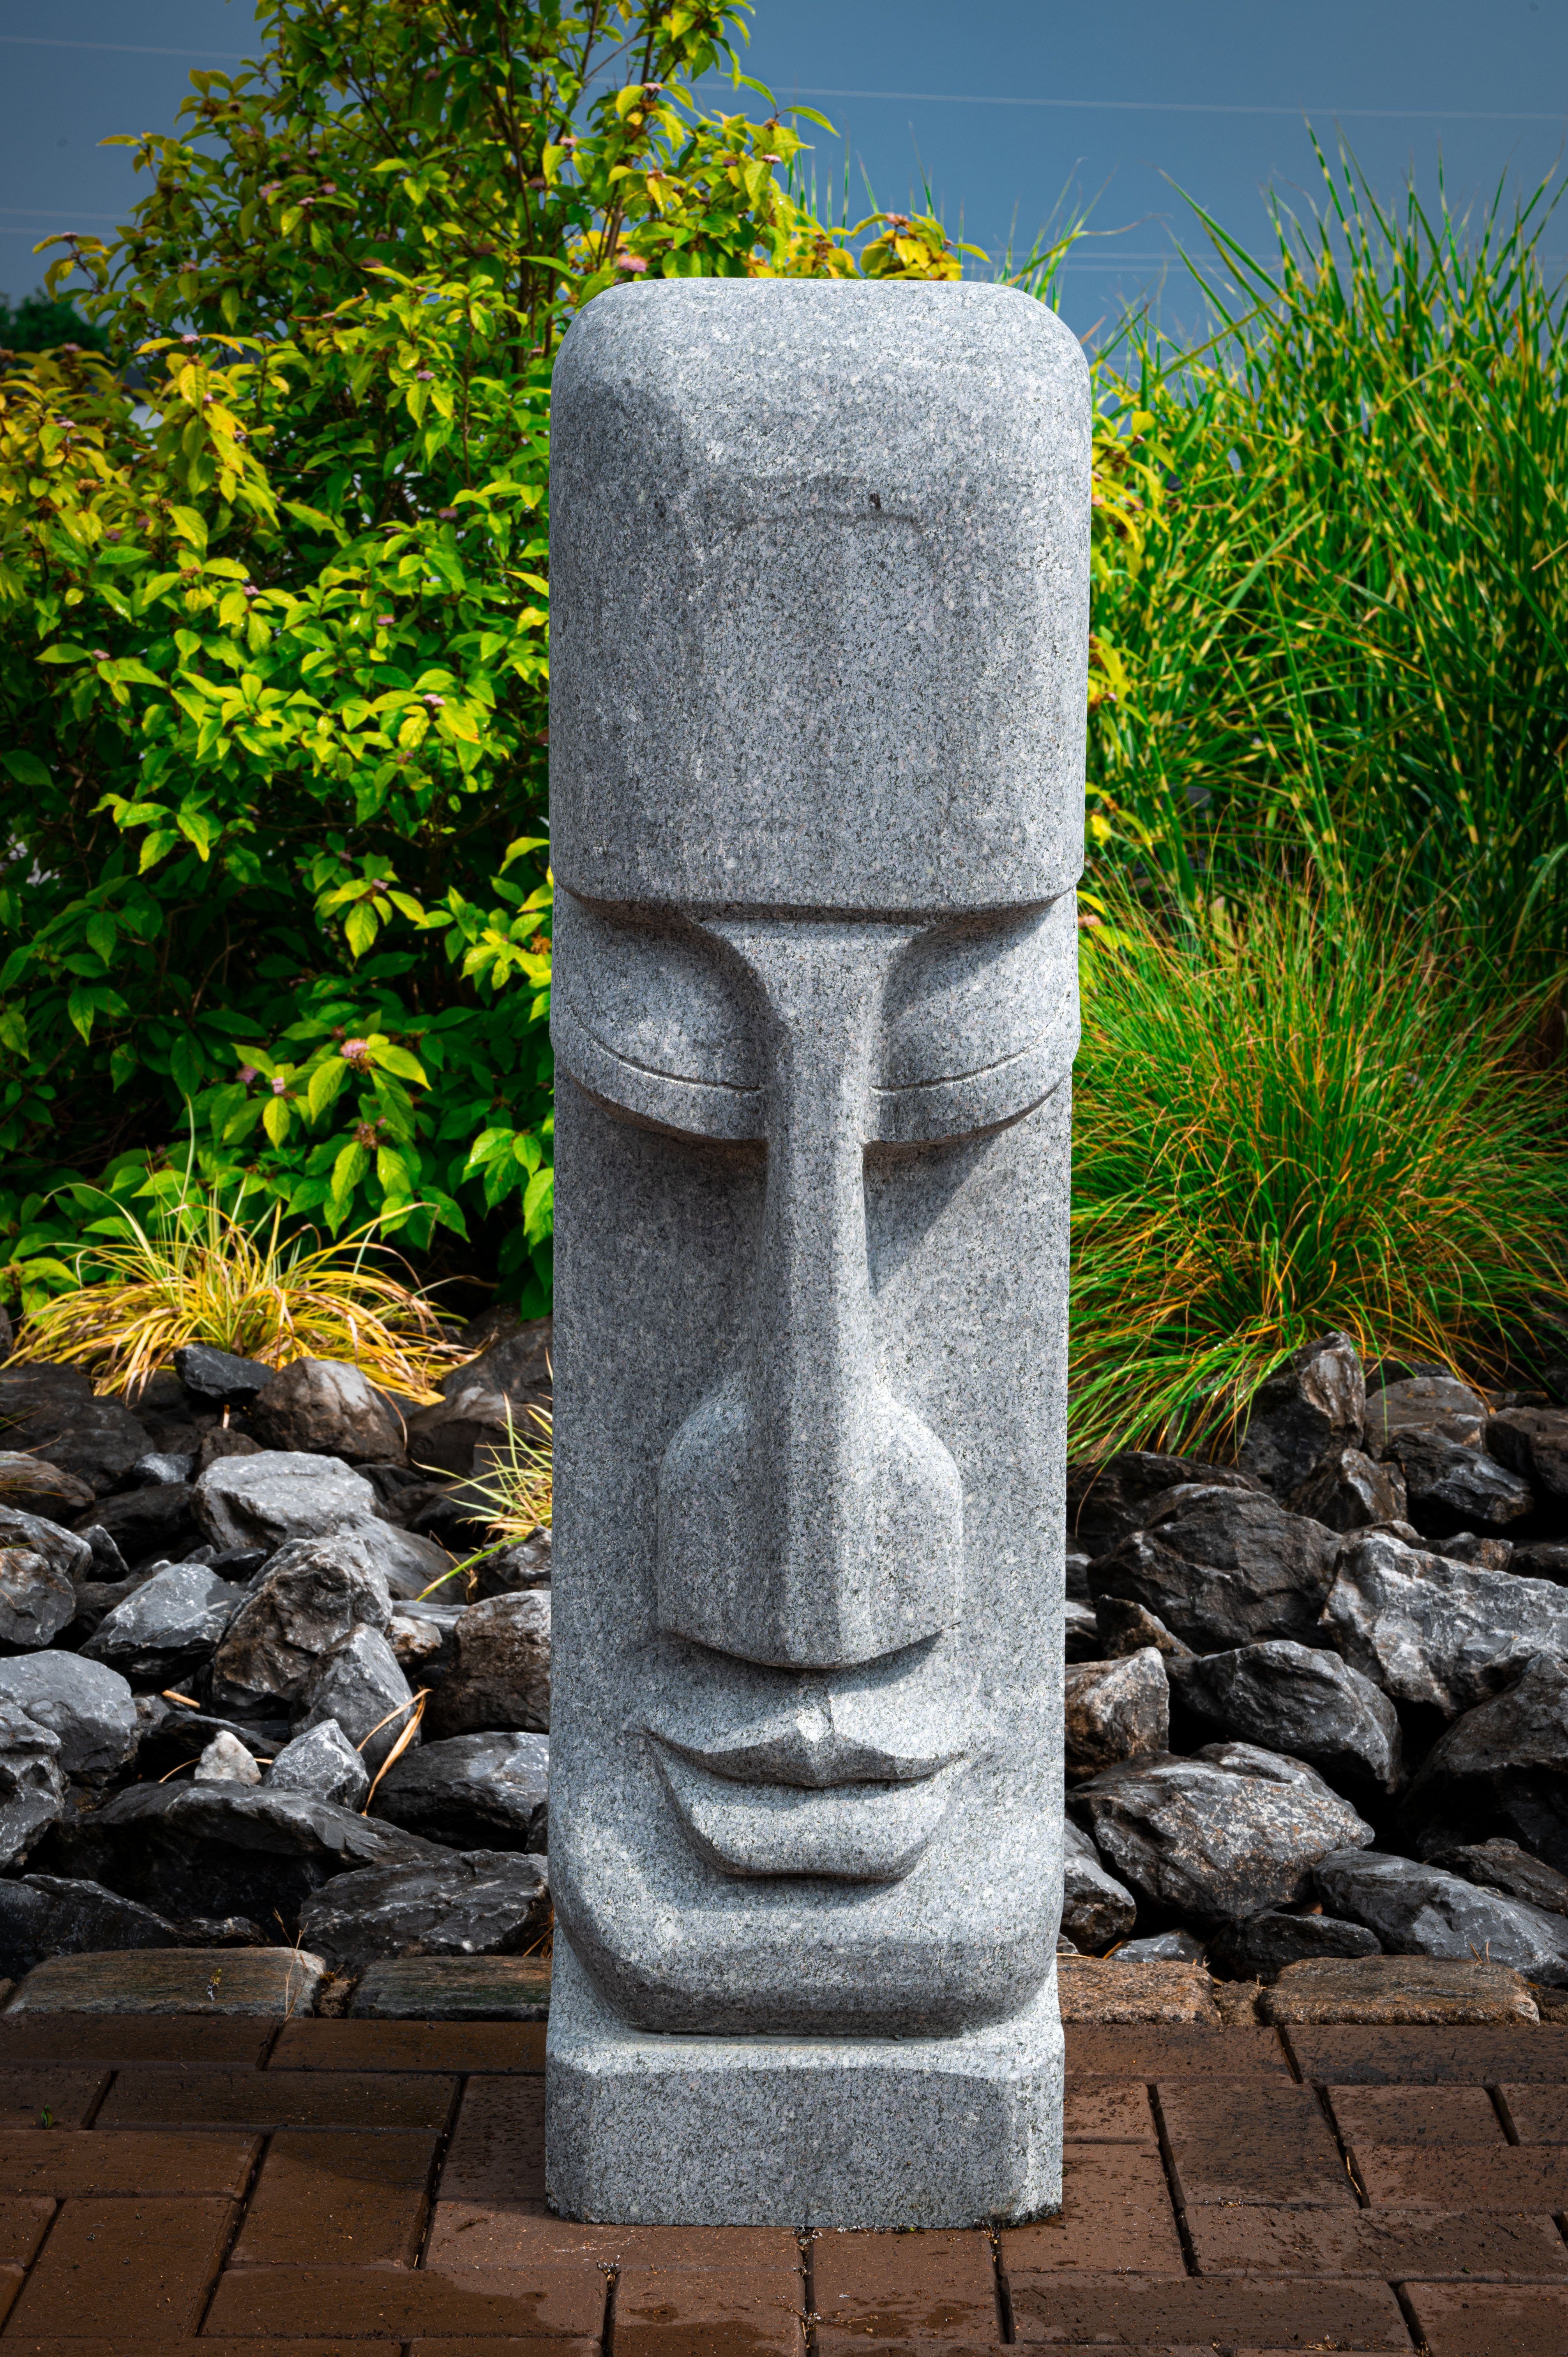 IDYL Gartenfigur Granitstein Osterinsel Kopf, Granitstein – ein Naturprodukt sehr robust – witterungsbeständig gegen Frost, Regen und UV-Strahlung.